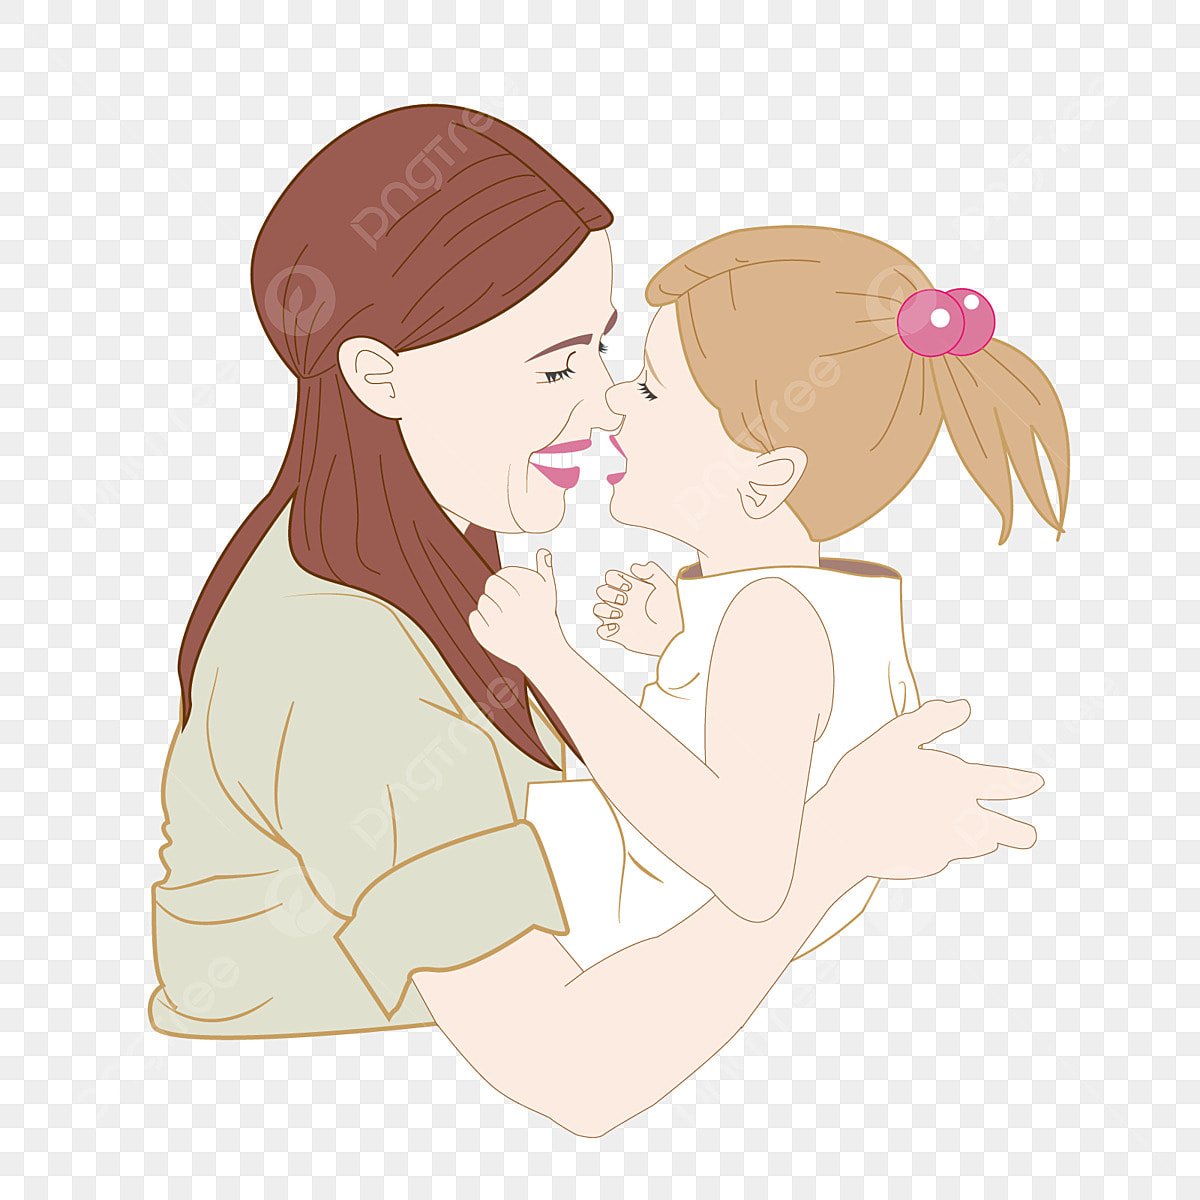 Картинка для детей мама на прозрачном фоне. Мама обнимает ребенка картина. Мама обнимает дочь. Объятия мамы. Мама с ребенком рисунок.